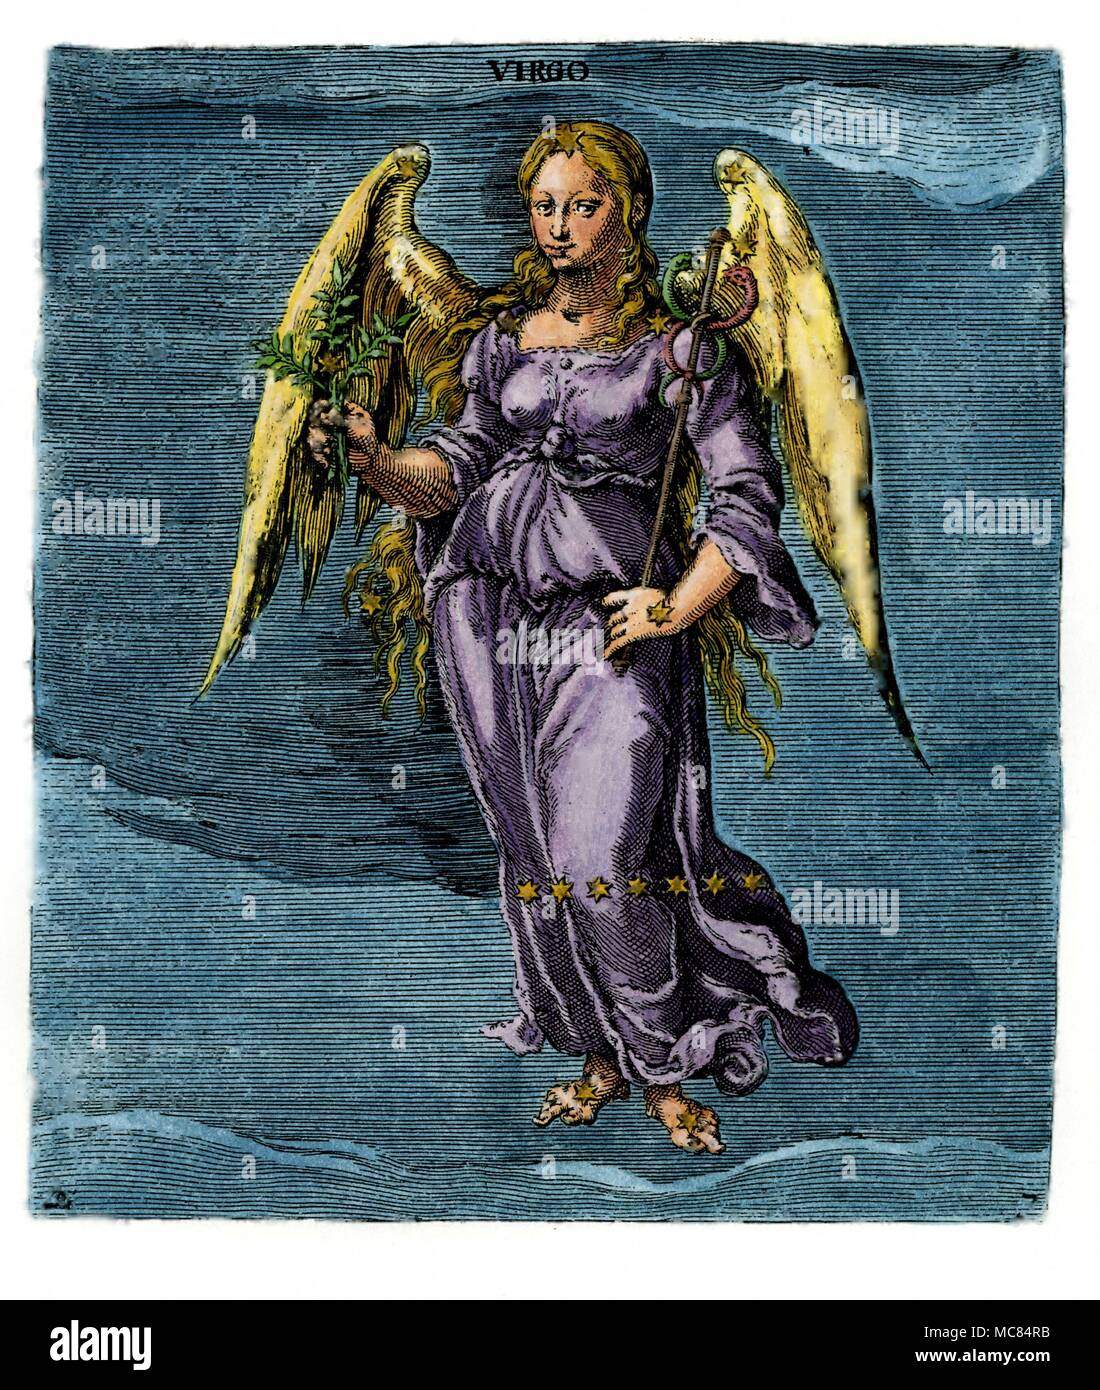 La Vierge, la jeune fille céleste, d'un dix-septième siècle à la main, gravure, qui est lui-même basé sur la 9e siècle Aratus mss. à Leyde. Aratus est né environ 315 BC en Soli, et a écrit son travail sur l'étoile pour la règle de Macédoine. Banque D'Images